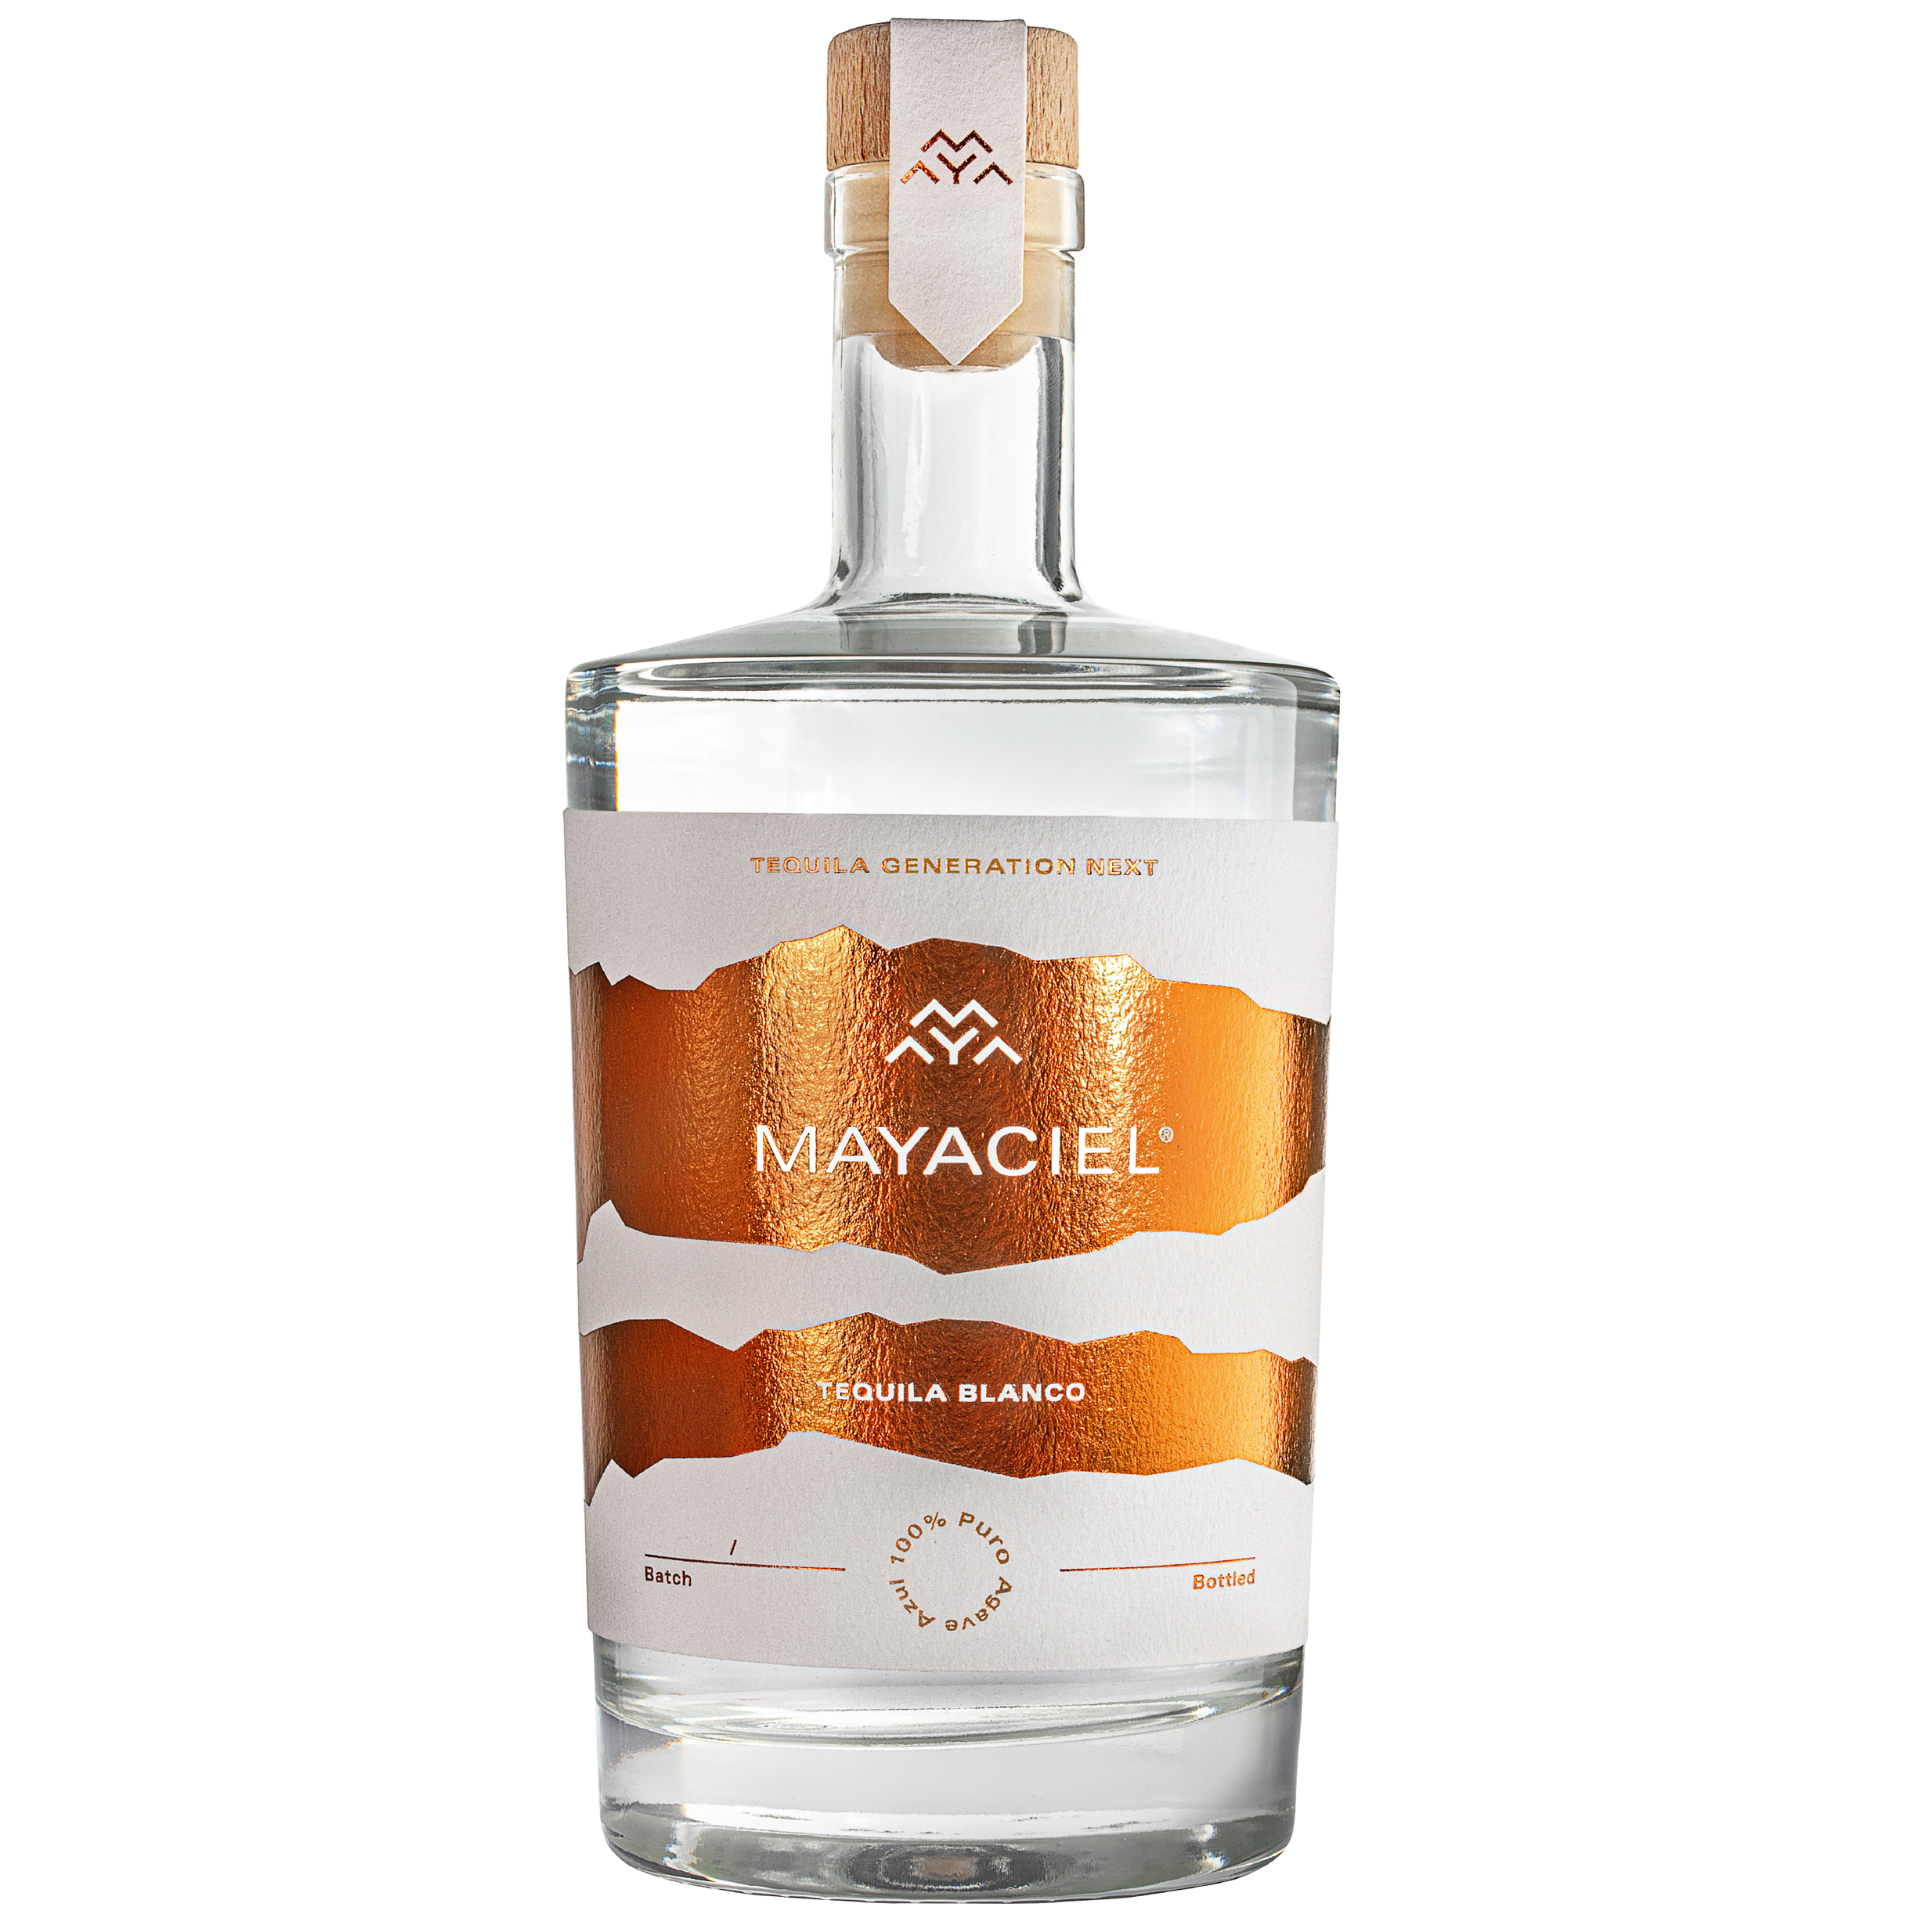 Mayaciel Tequila Blanco 100% Puro Agave 45% 0,5l